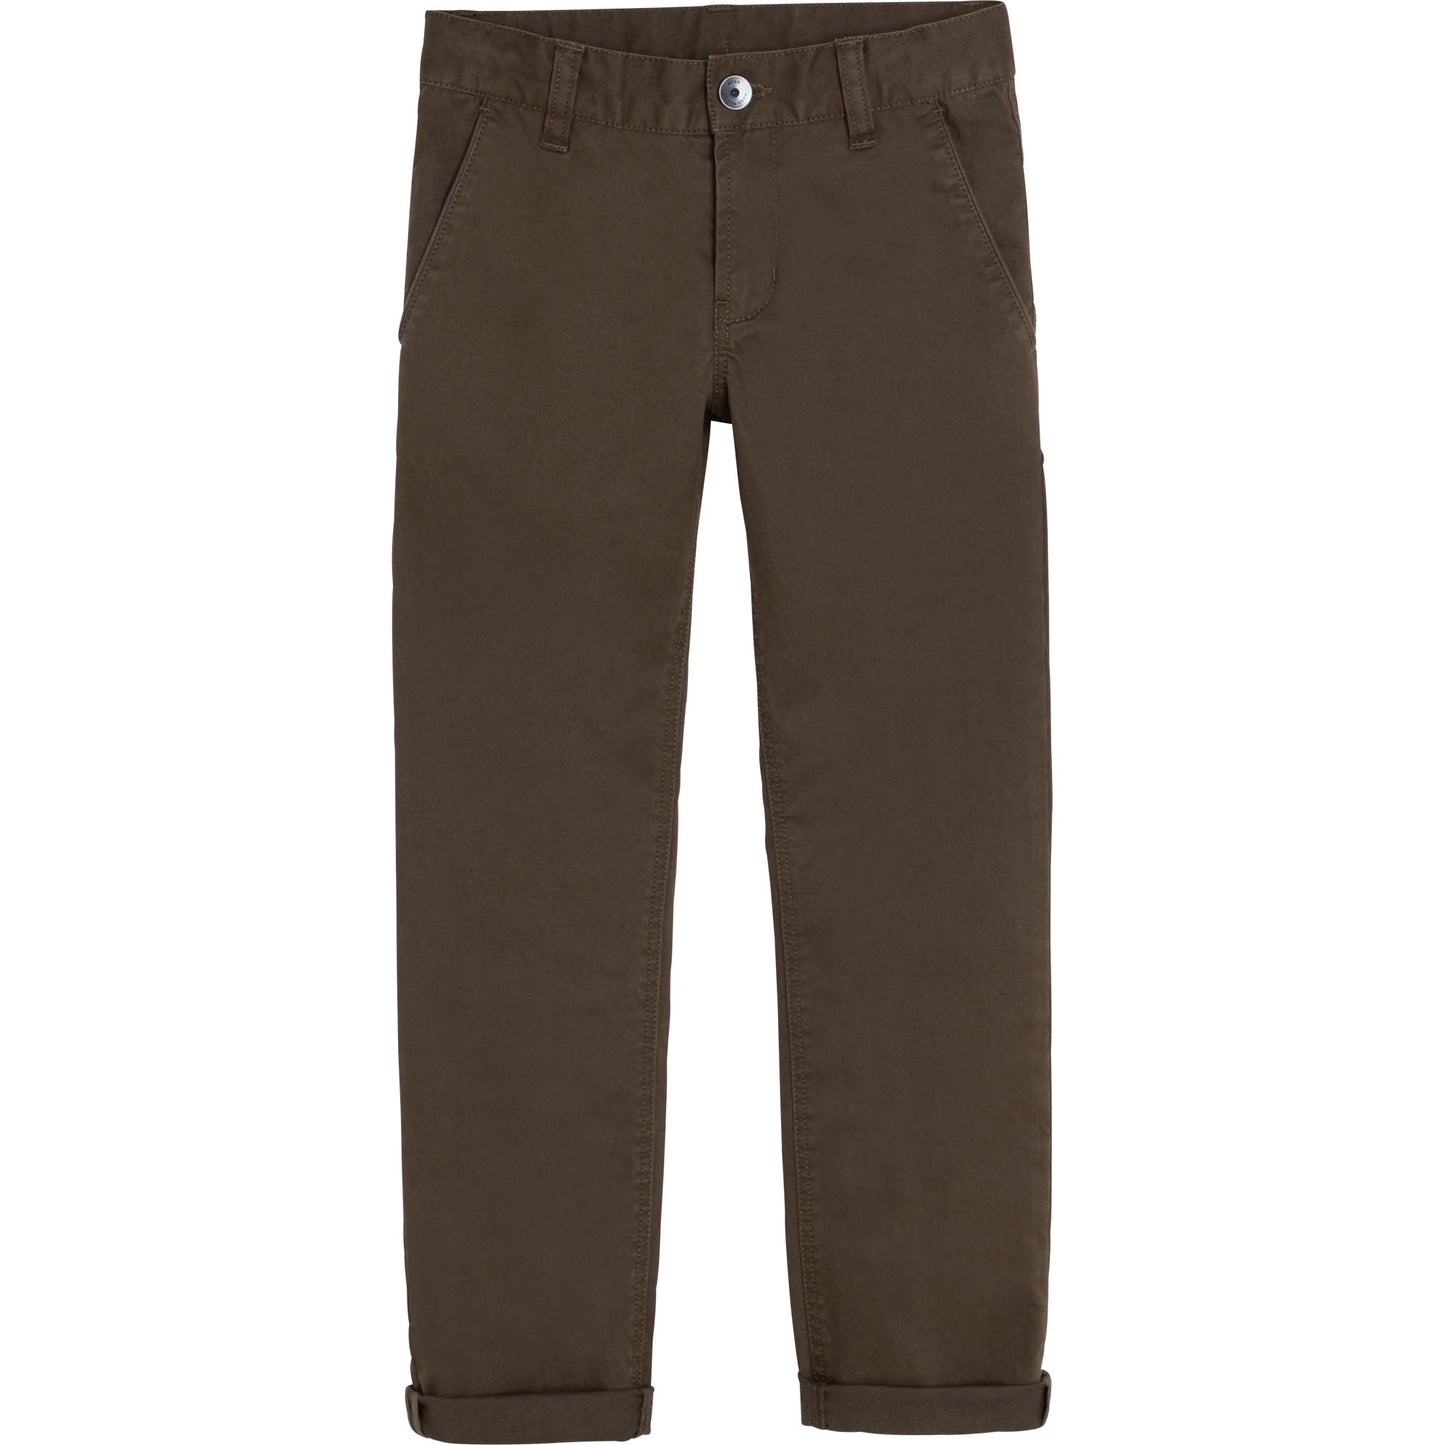 Hugo Boss Boys Khaki Cotton Pants J24732